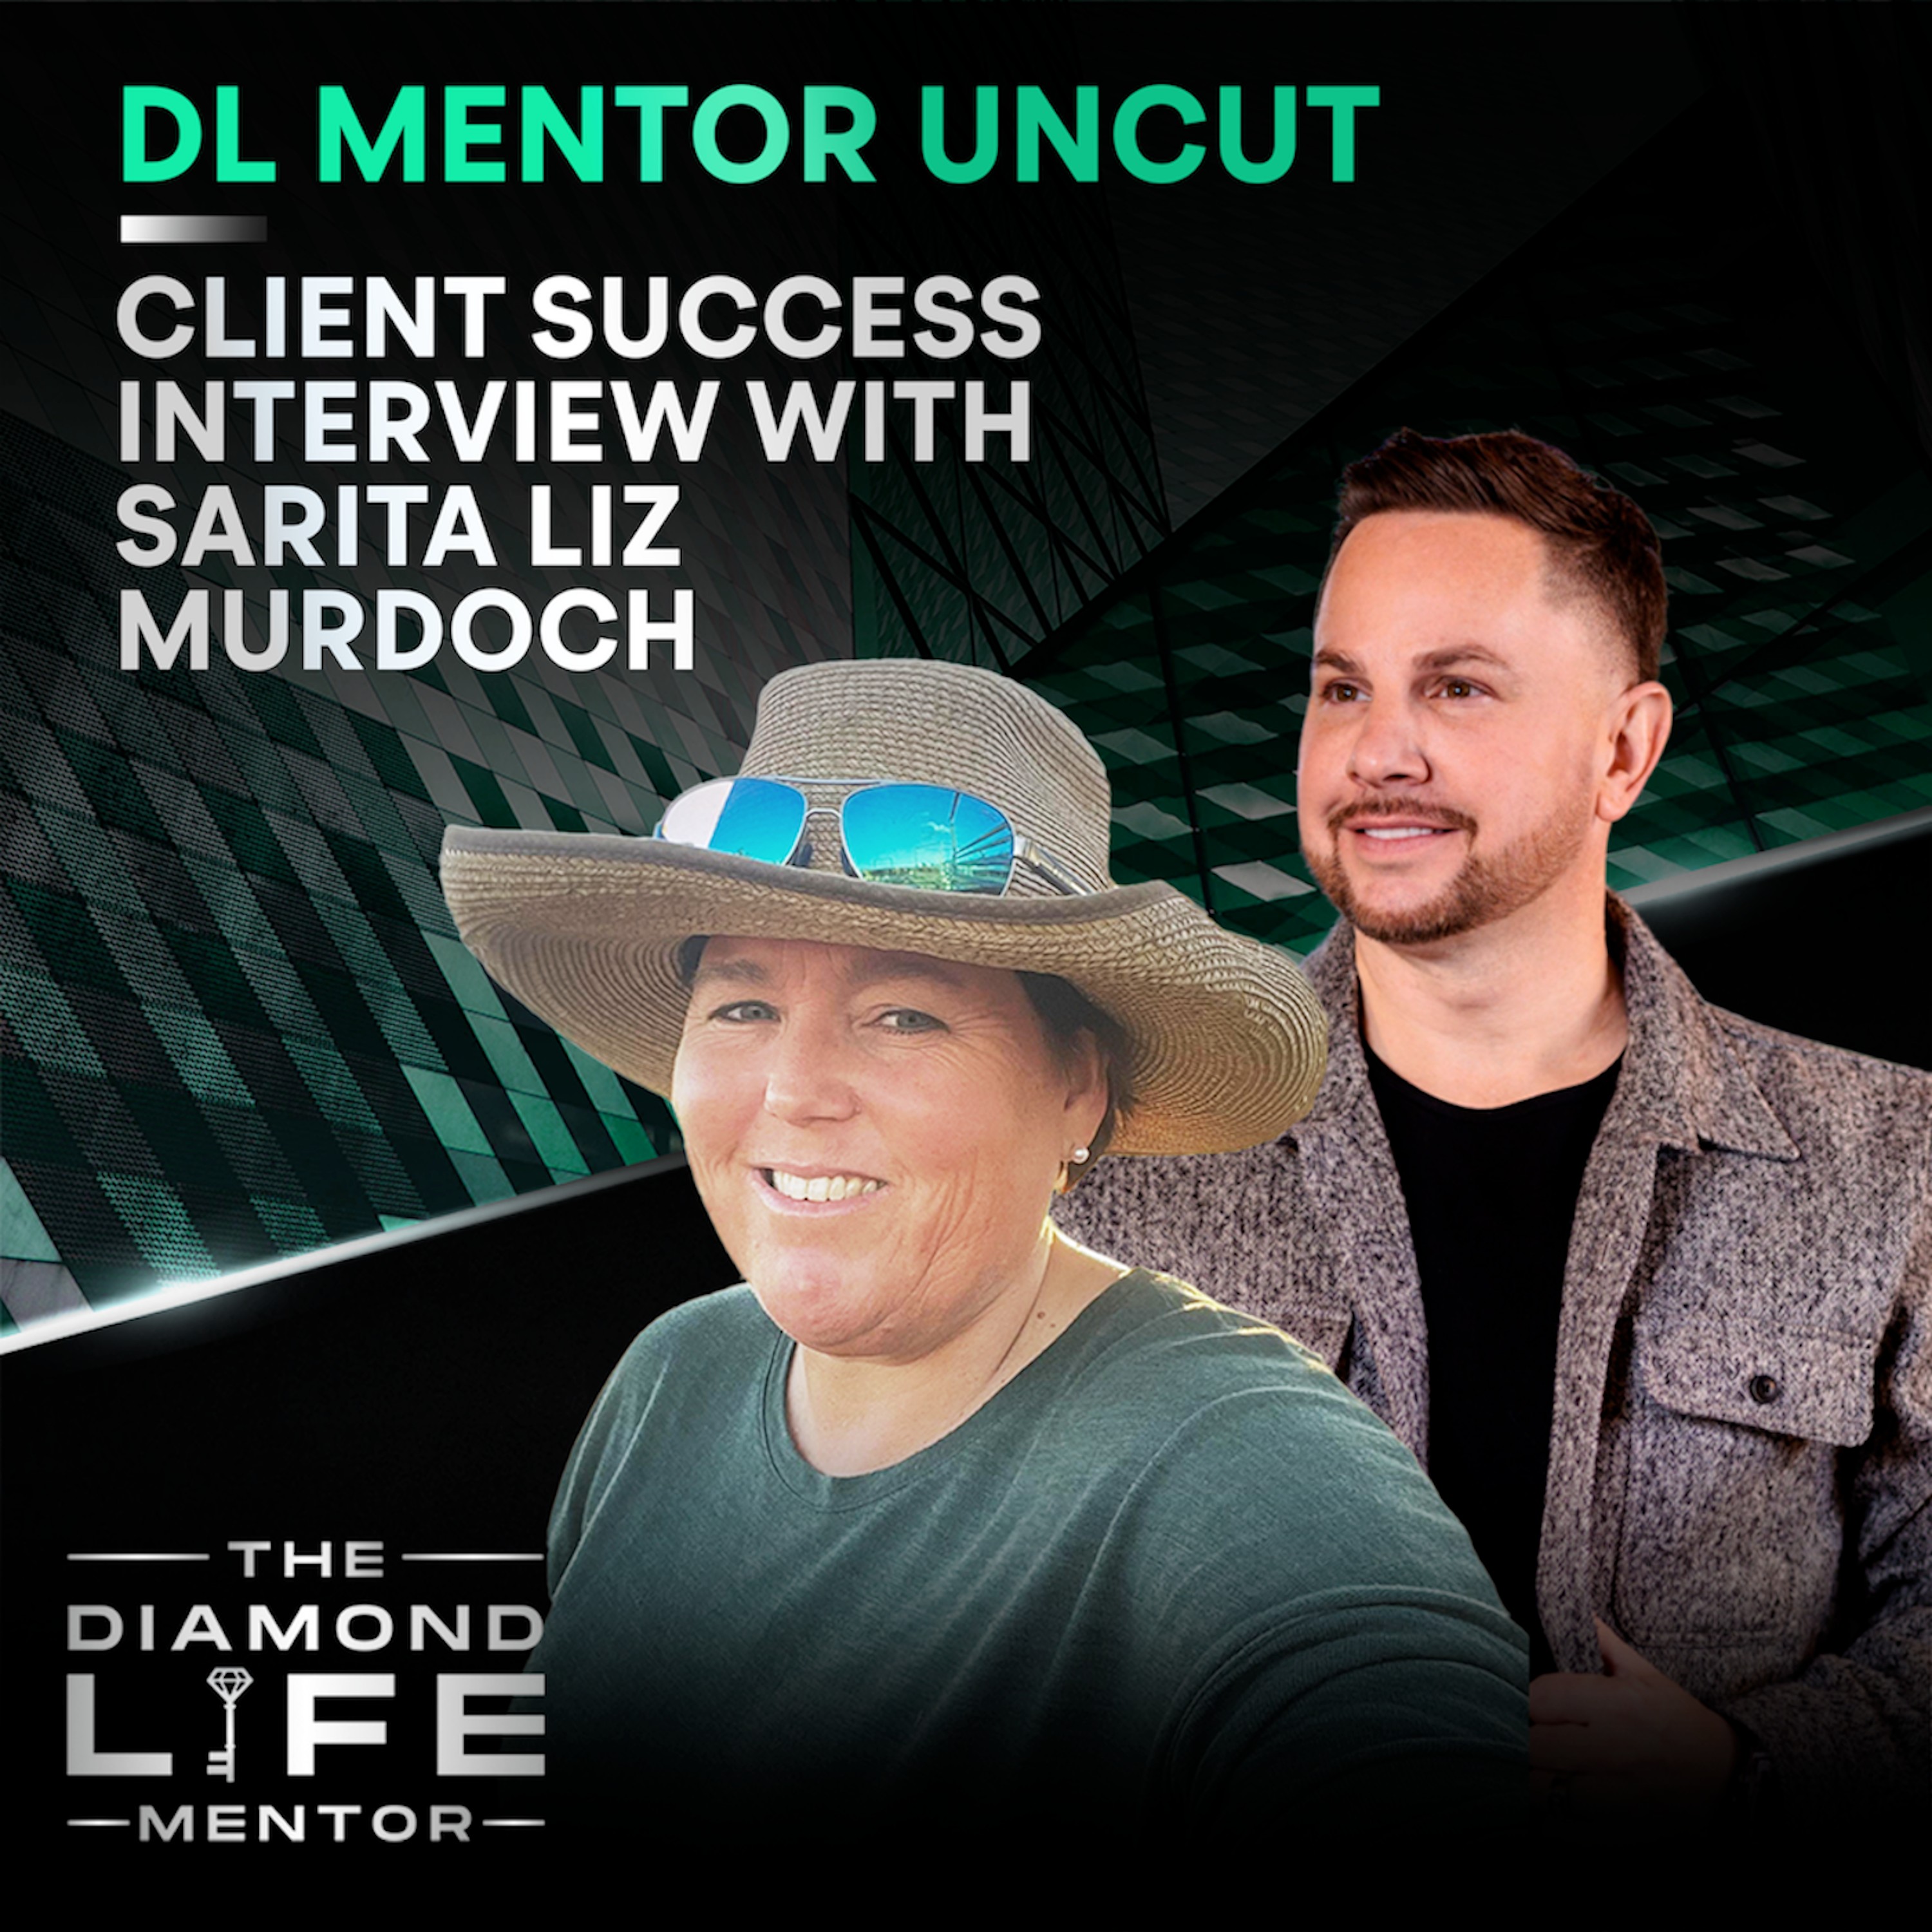 DL Mentor Uncut – Client Success Interview with Sarita Liz Murdoch